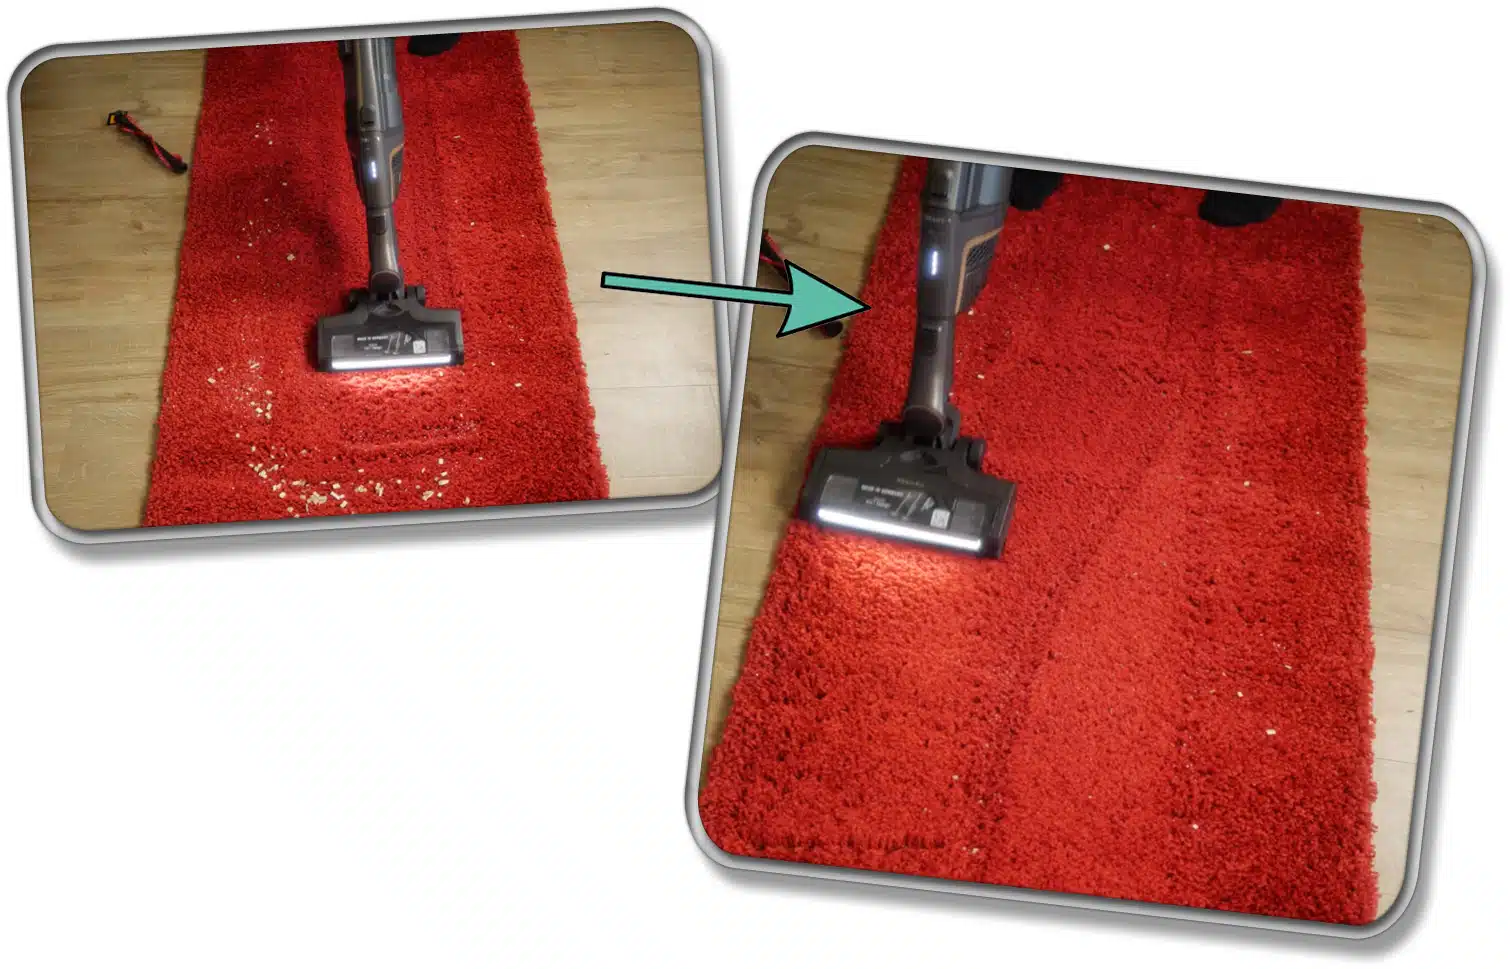 Miele Triflex HX2 Pro - Unsere gemessene Saugleistung auf Teppichboden